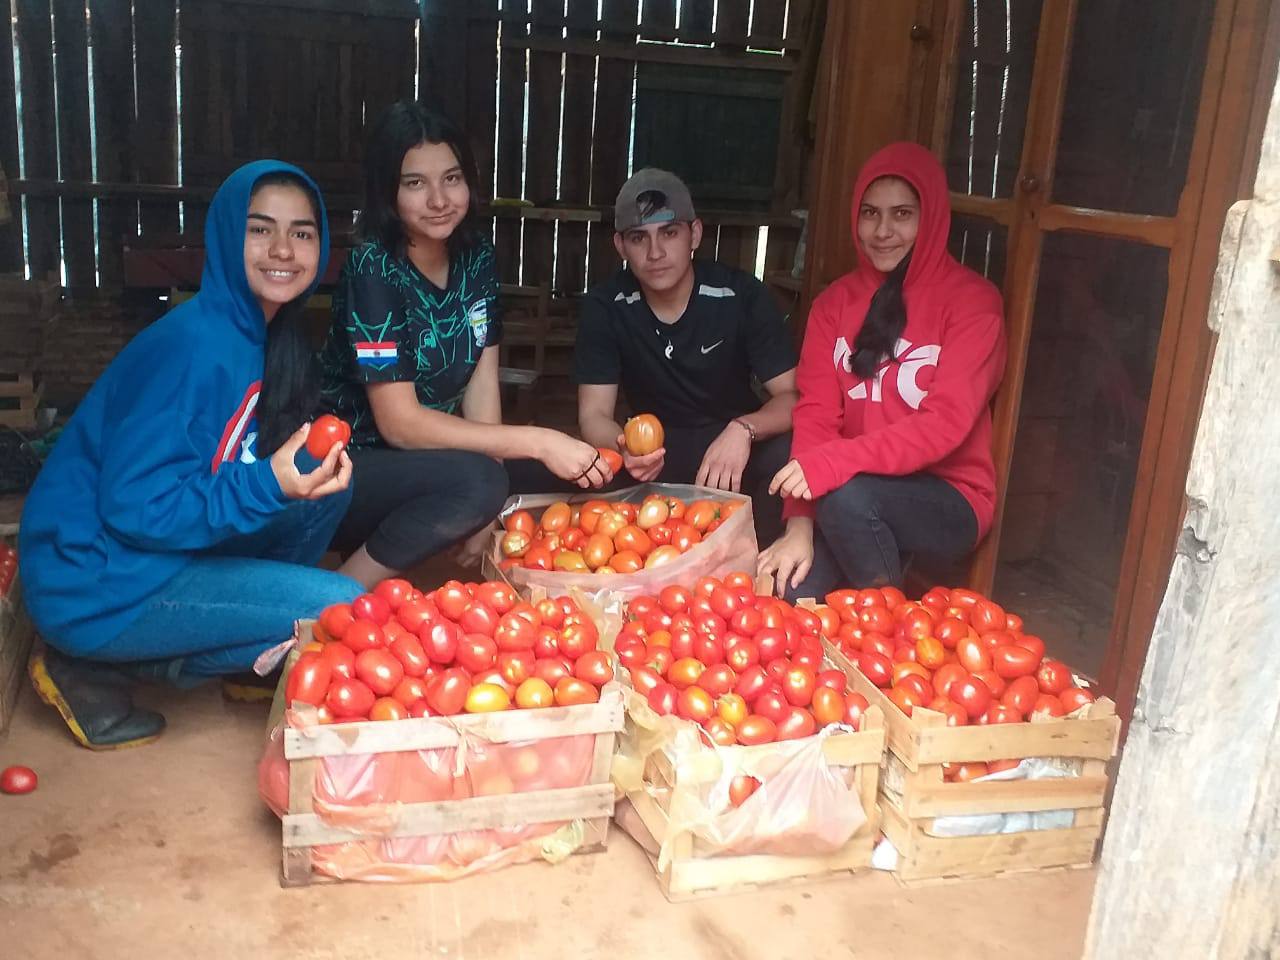 Vier Jugedliche, davon drei Mädchen und ein Junge, knien vor Tomatenkisten in einem Schuppen.